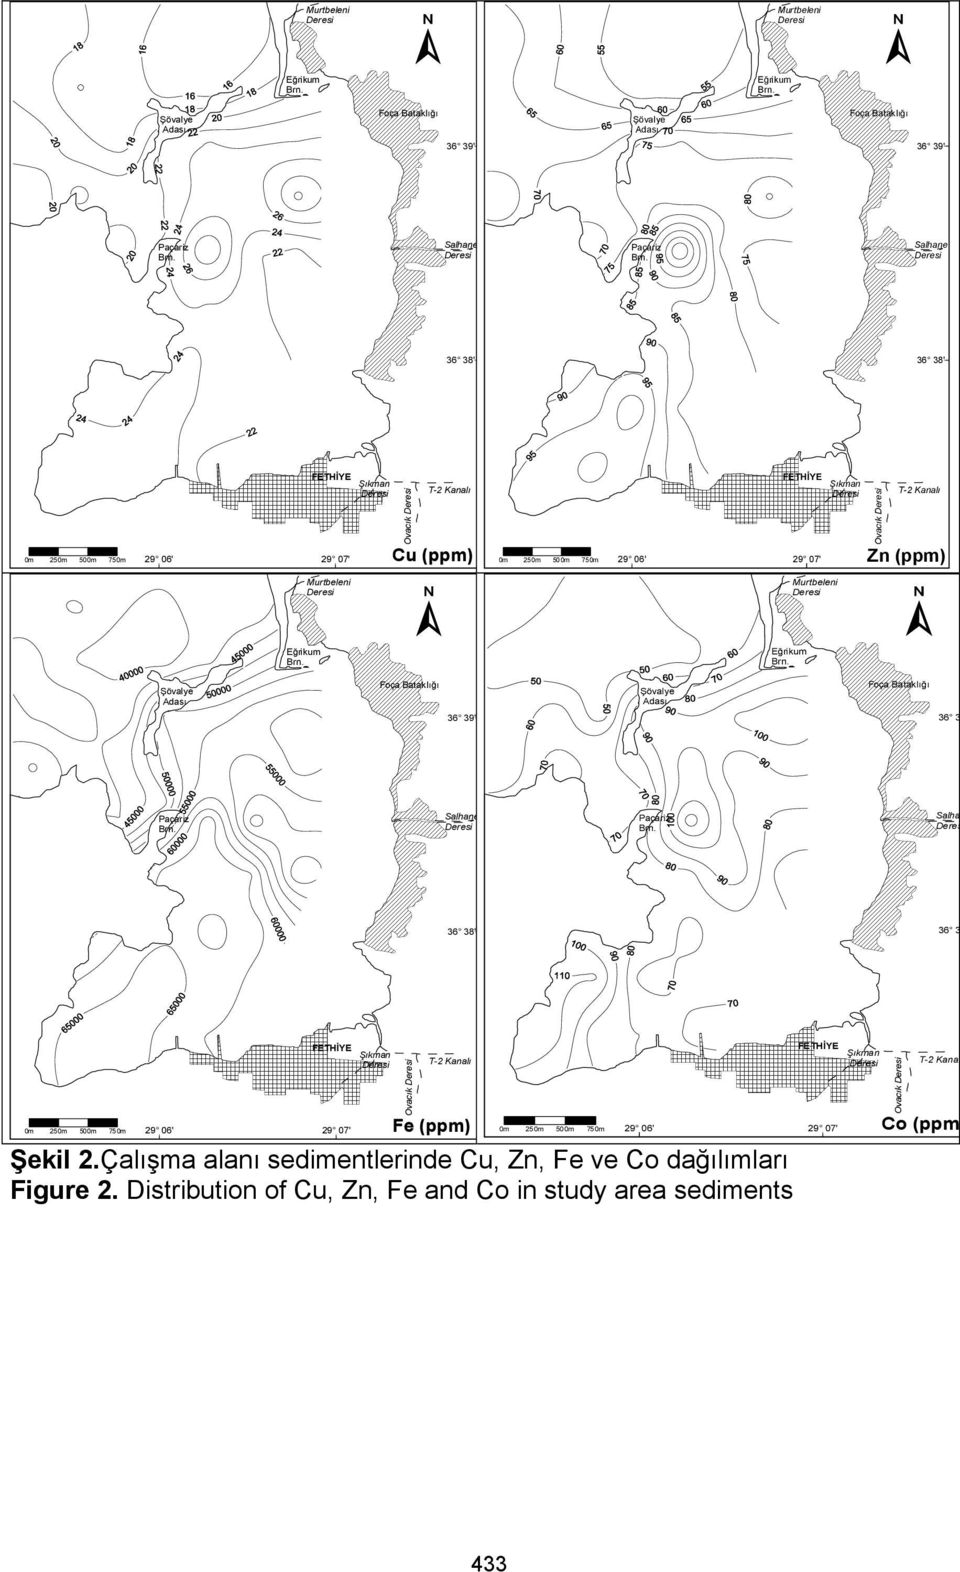 Çalışma alanı sedimentlerinde Cu, Zn, Fe ve Co dağılımları